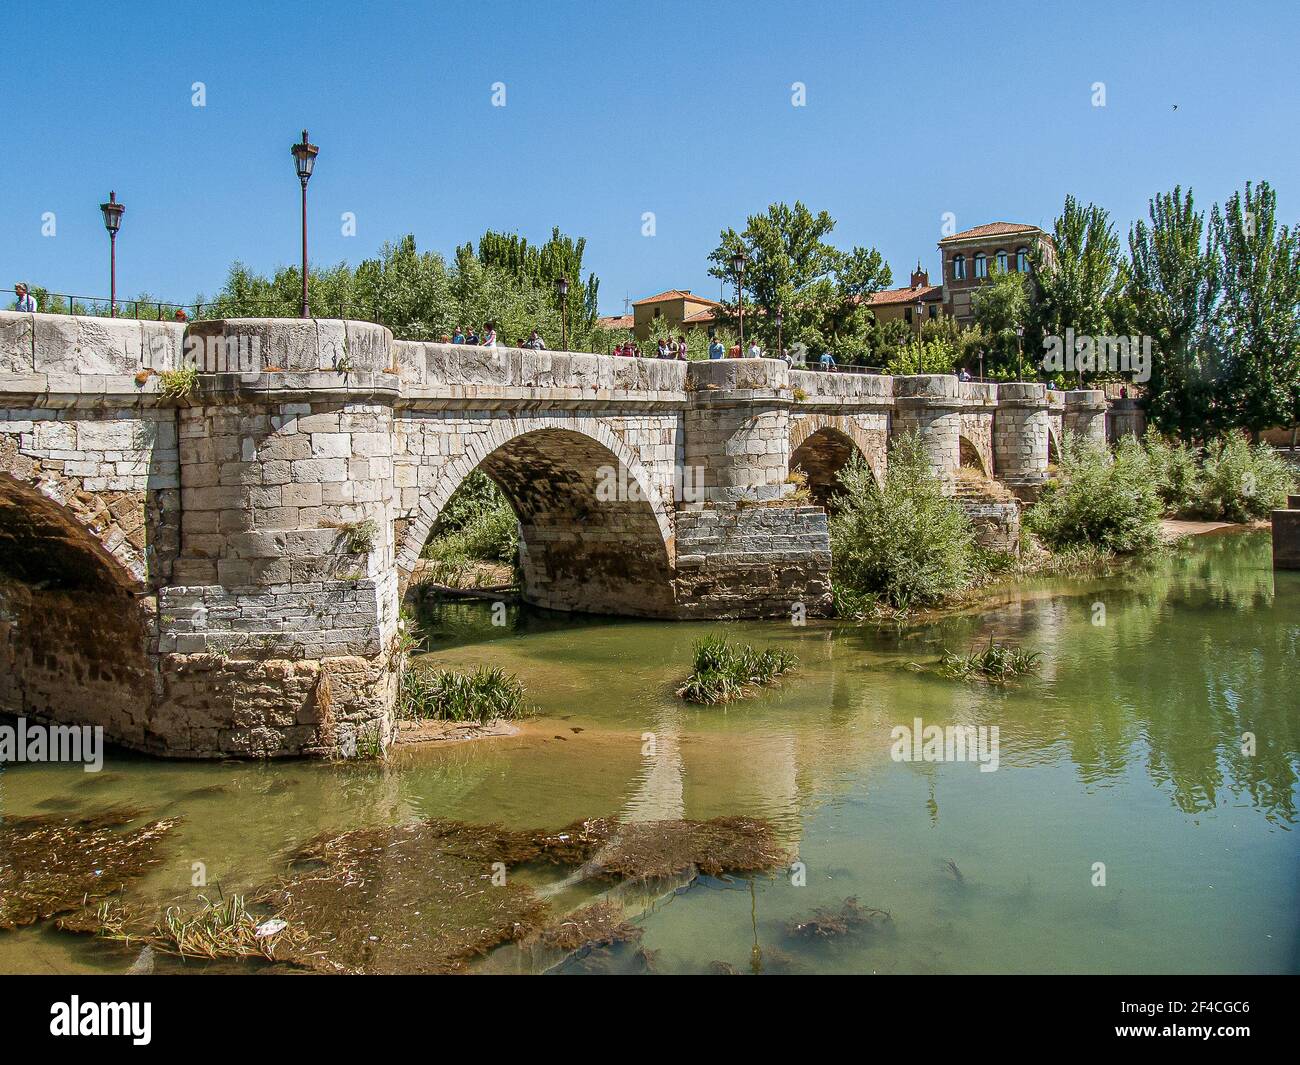 Medieval bridge over the Bernesga River in Leon, Spain, July 15, 2010 Stock Photo